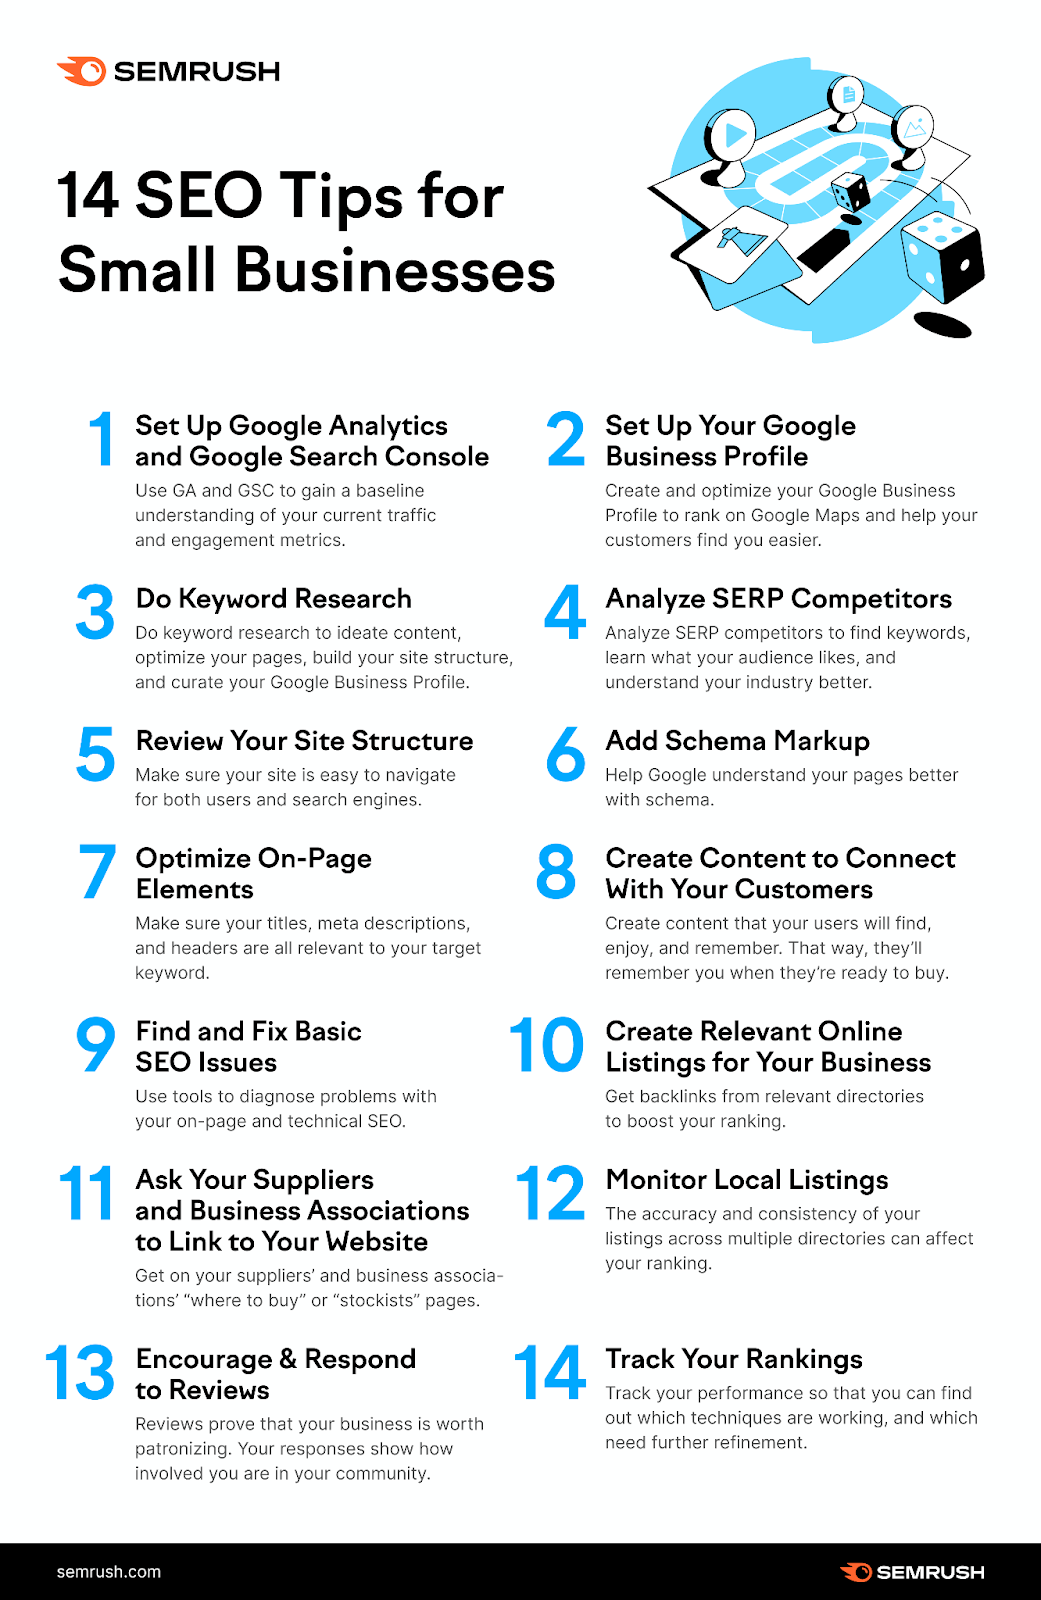 Small Business SEO Checklist